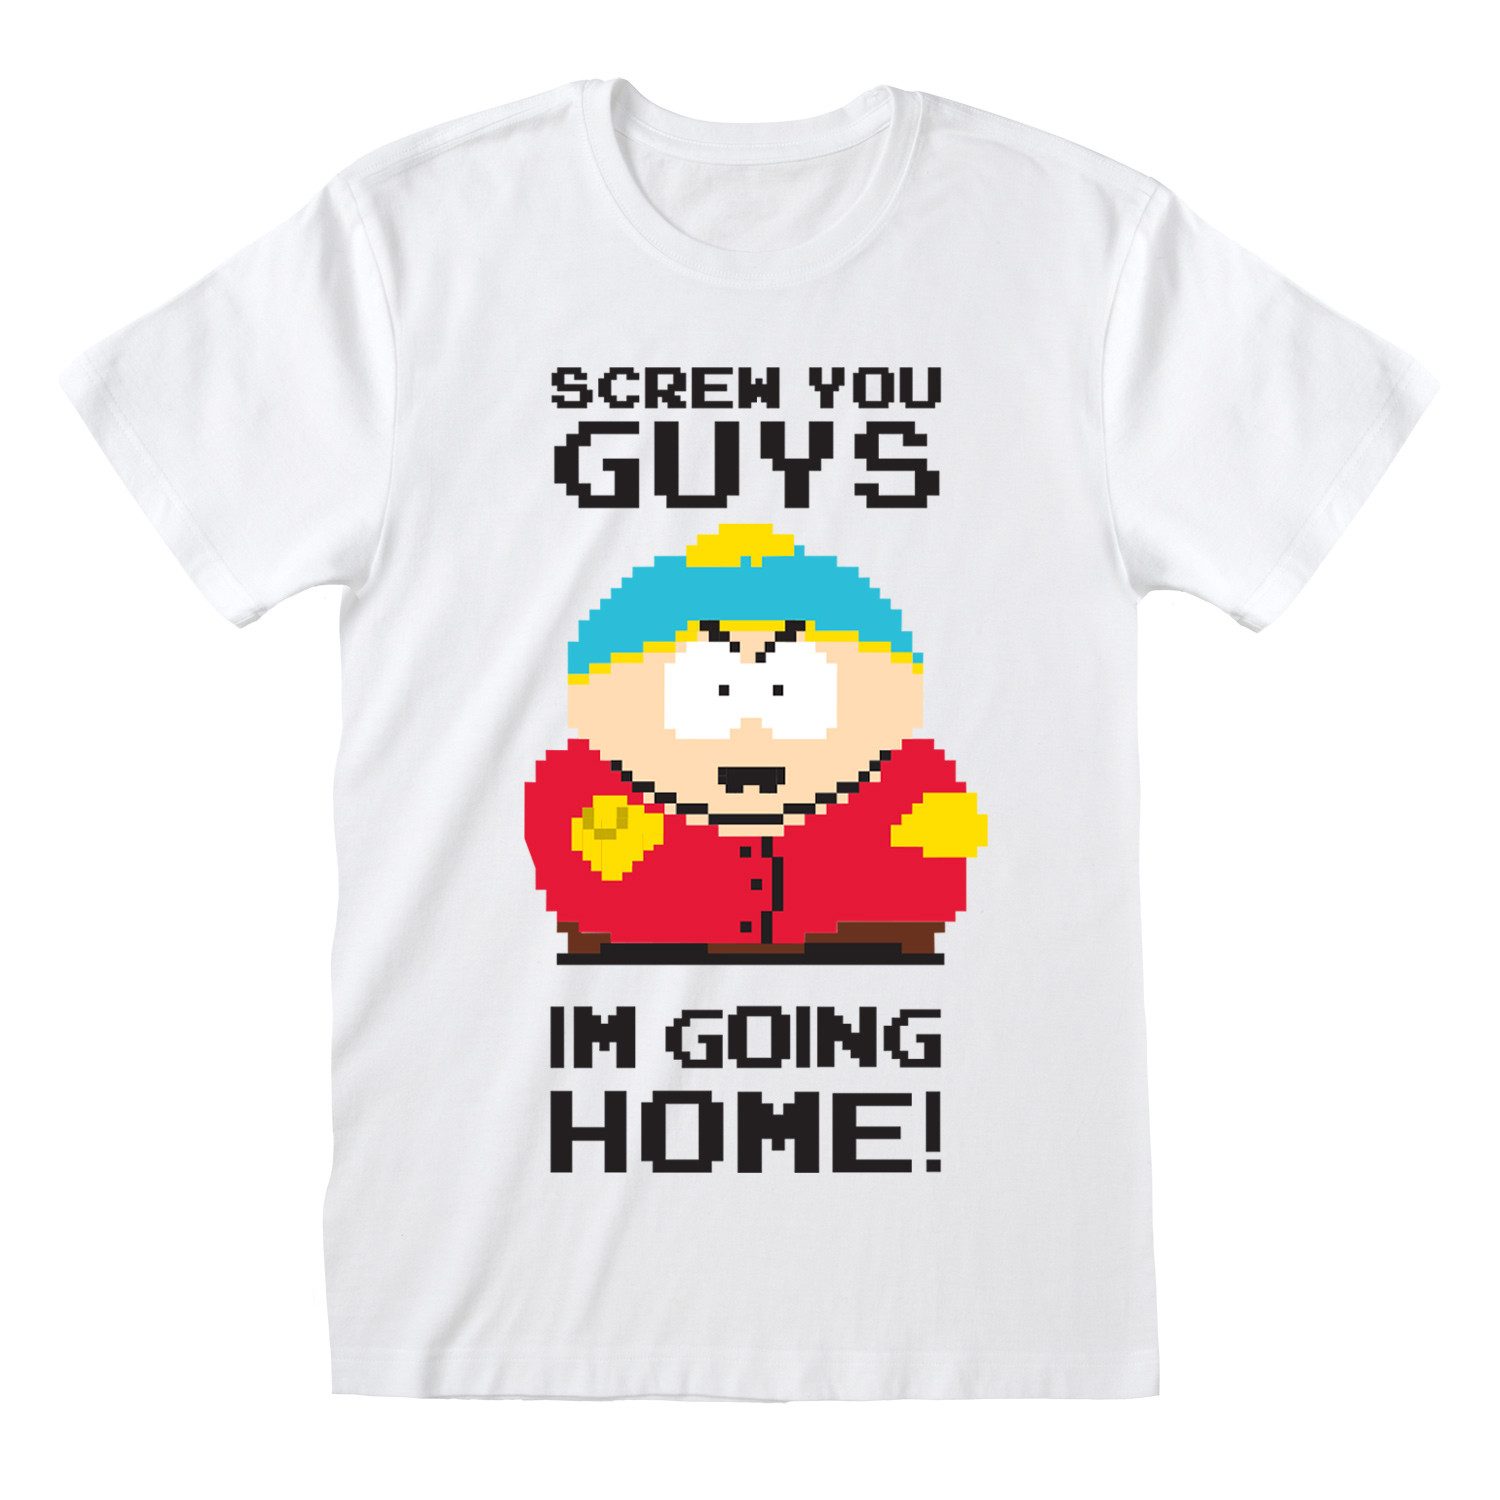 South Park T-Shirt Screw You Guys